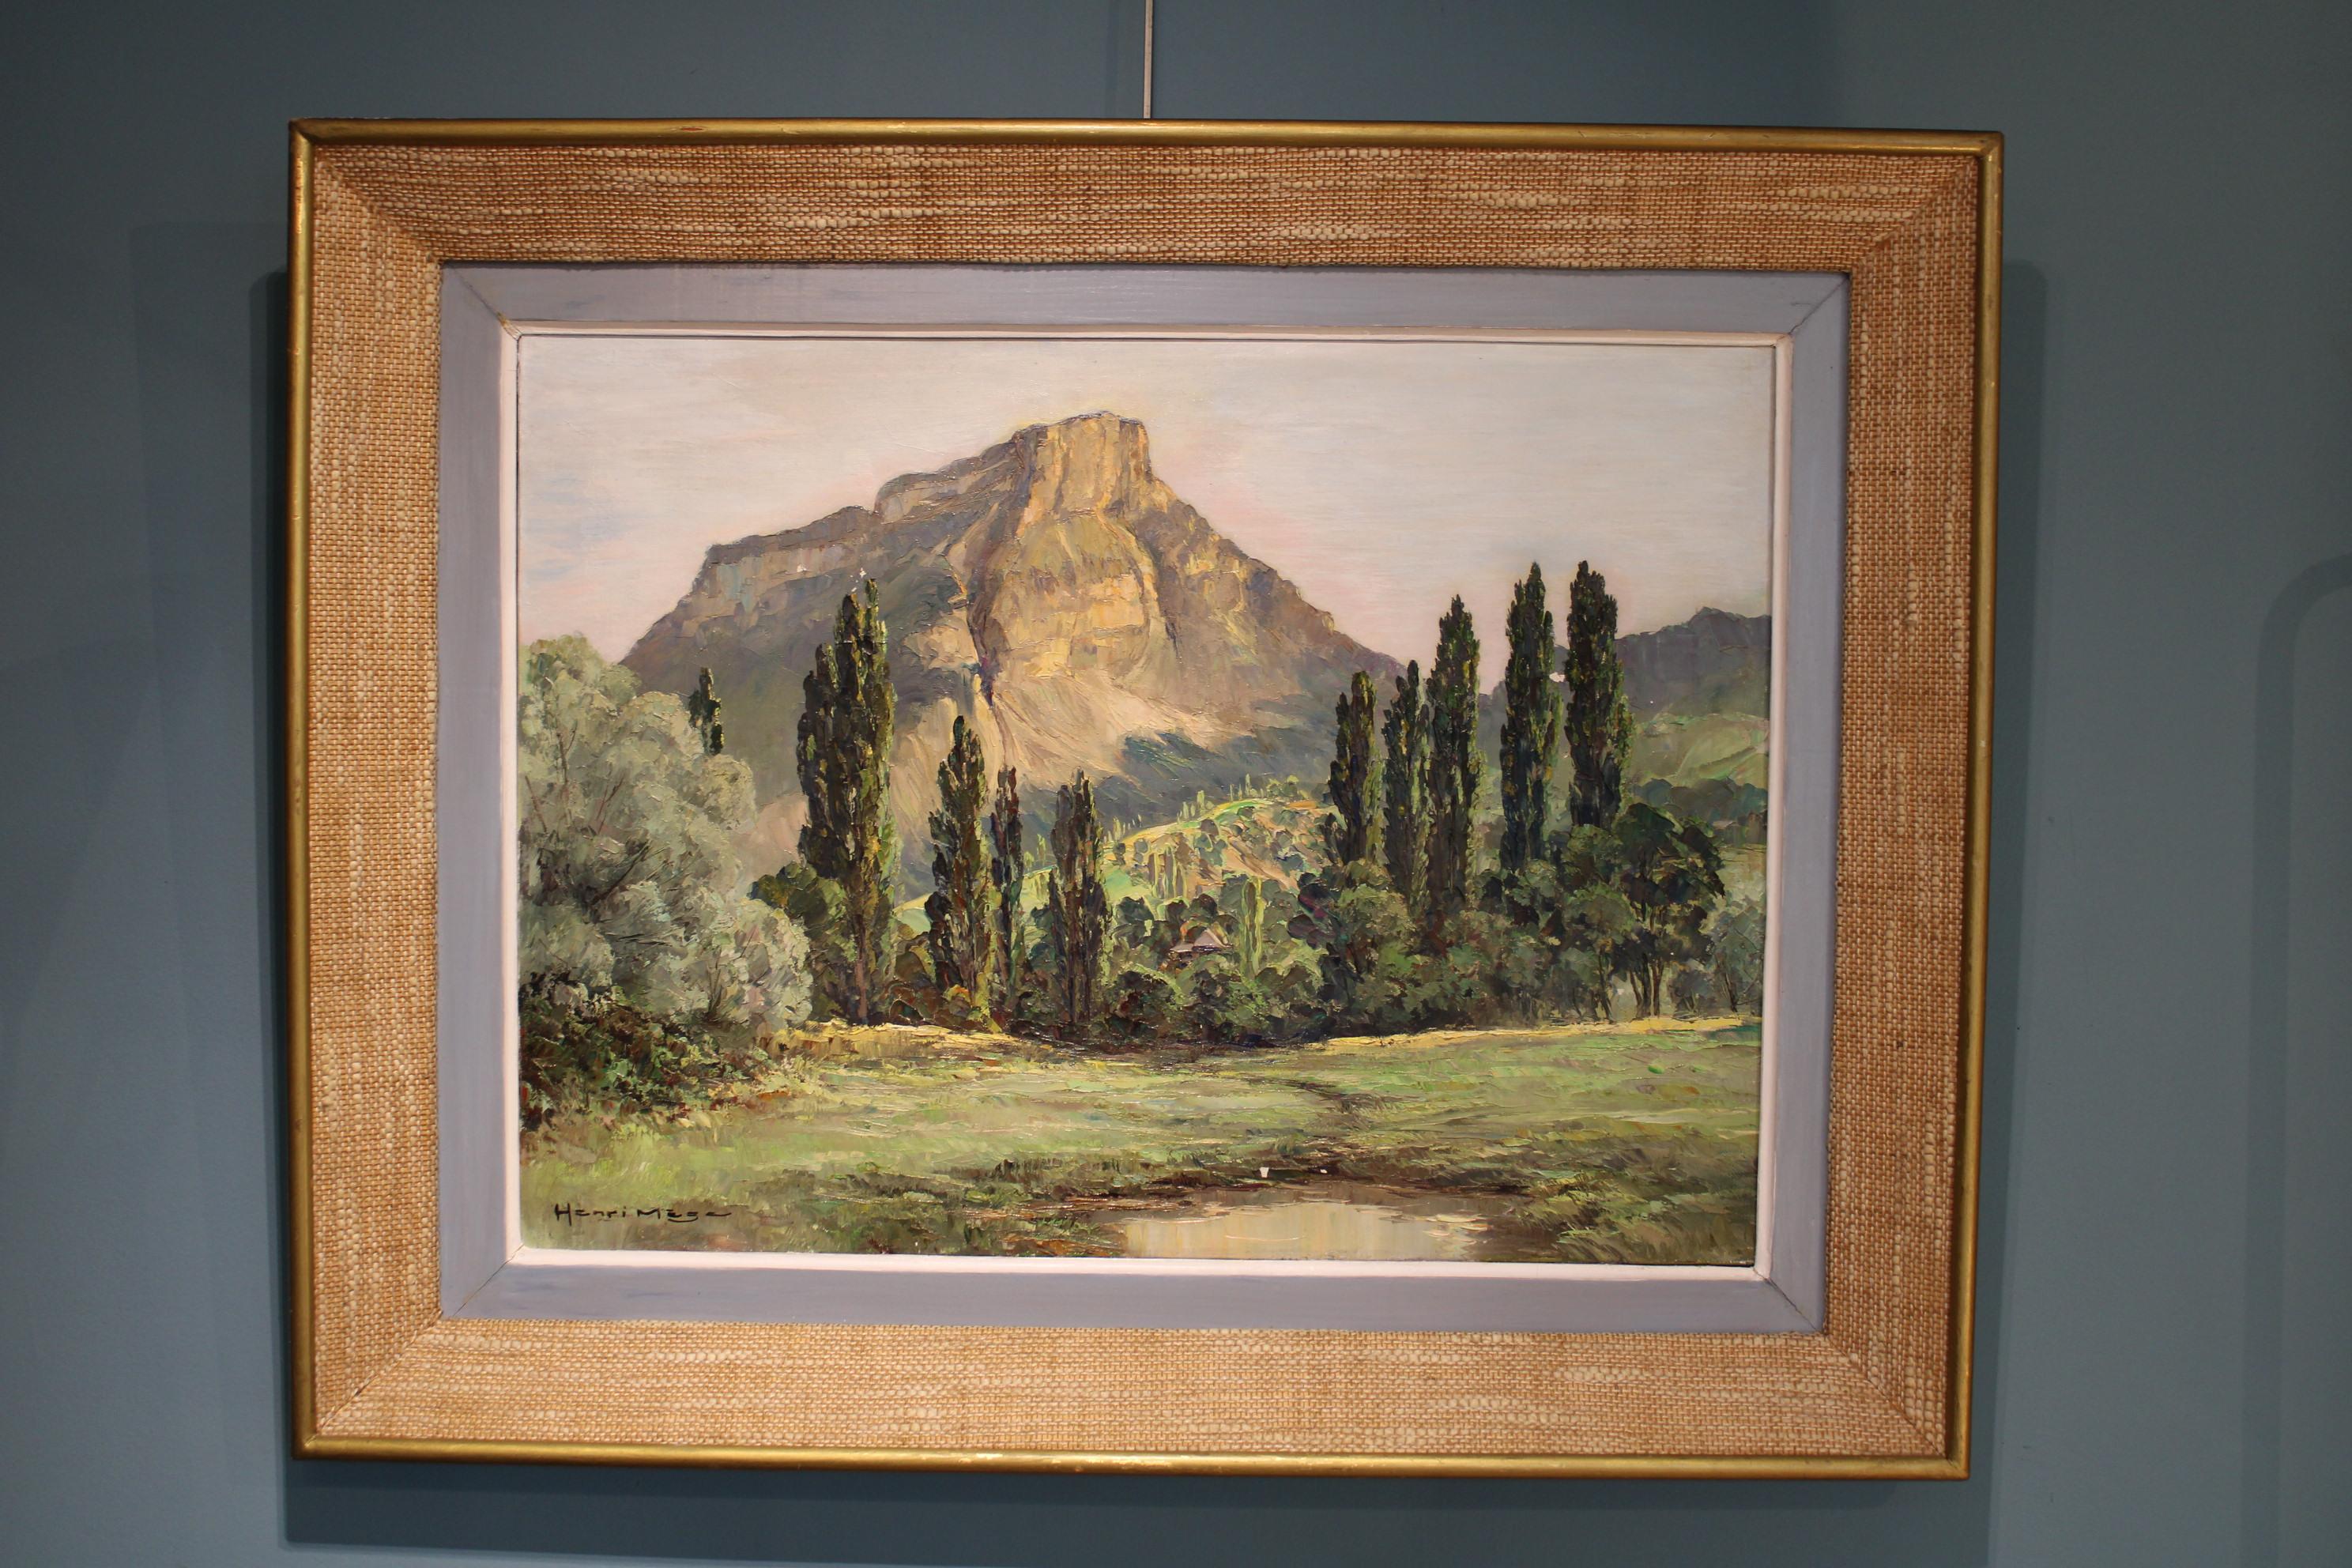 Gemälde von Henri Mege (1904-1984)
Öl auf Leinwand
Maße mit Rahmen: 95,5 x 76 x 7 cm

Mehrere Lücken im Lack (siehe Fotos).